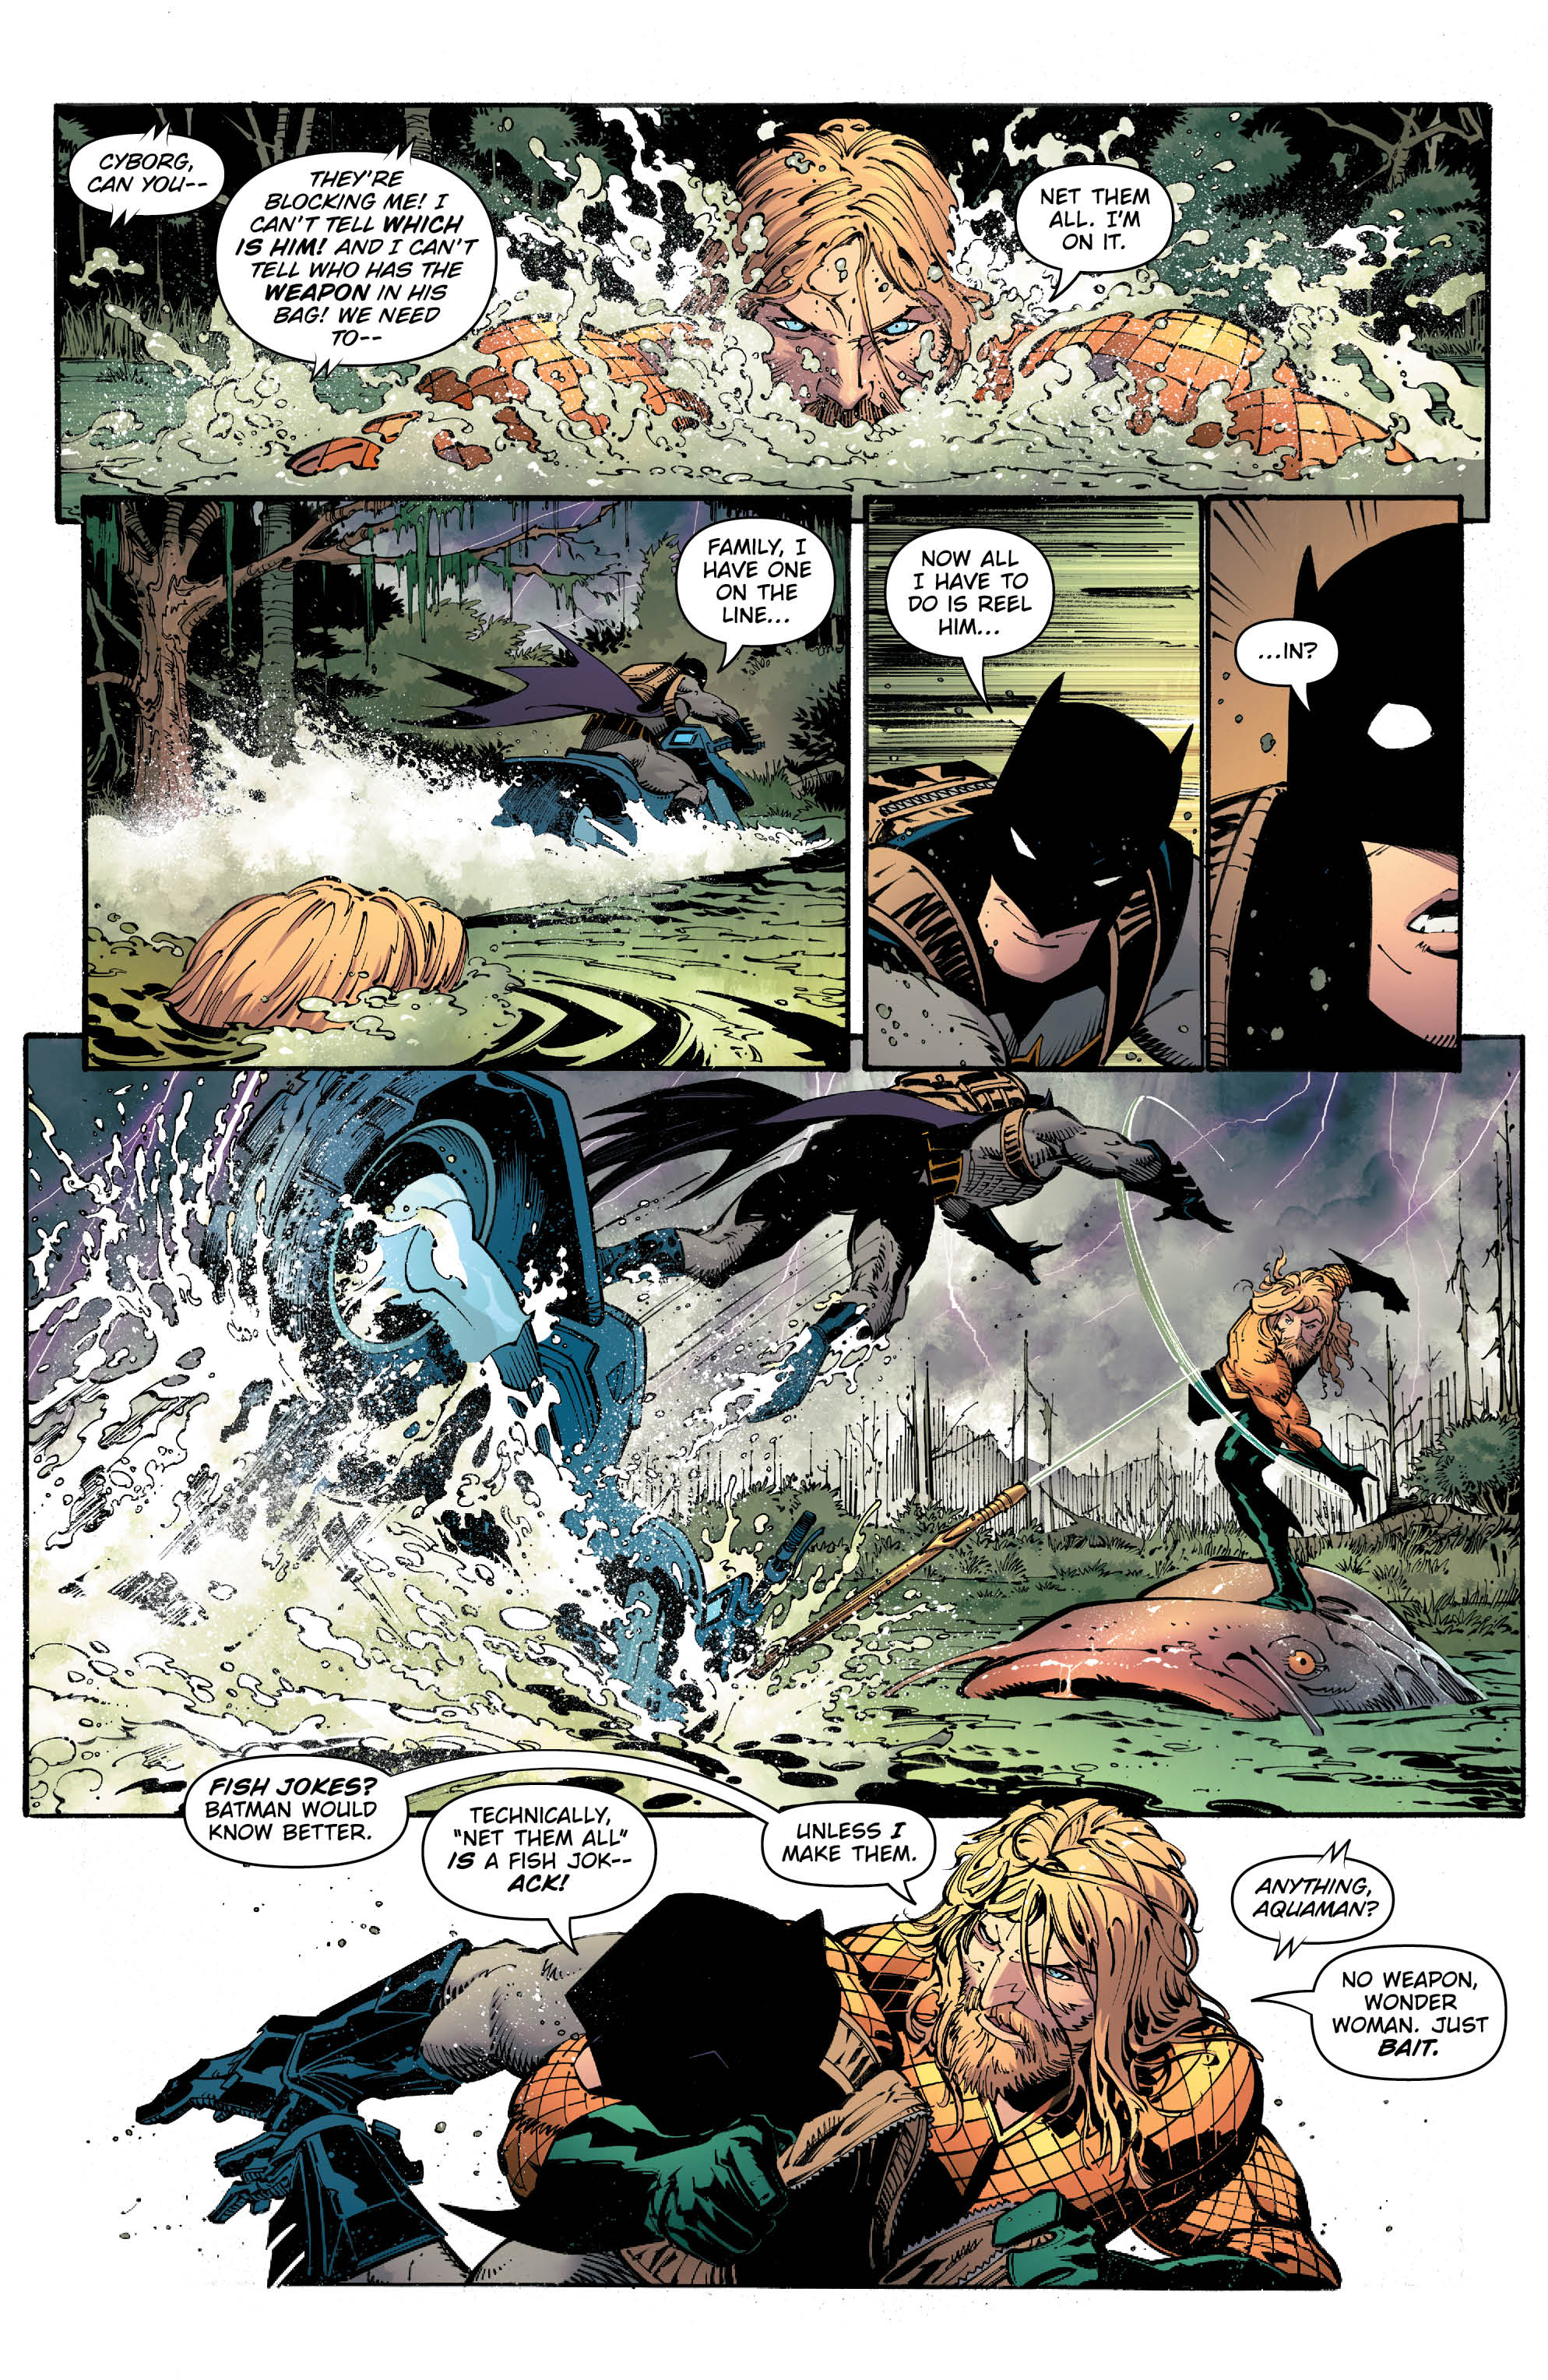 Metal 2 - Page 4 - DC Comics News